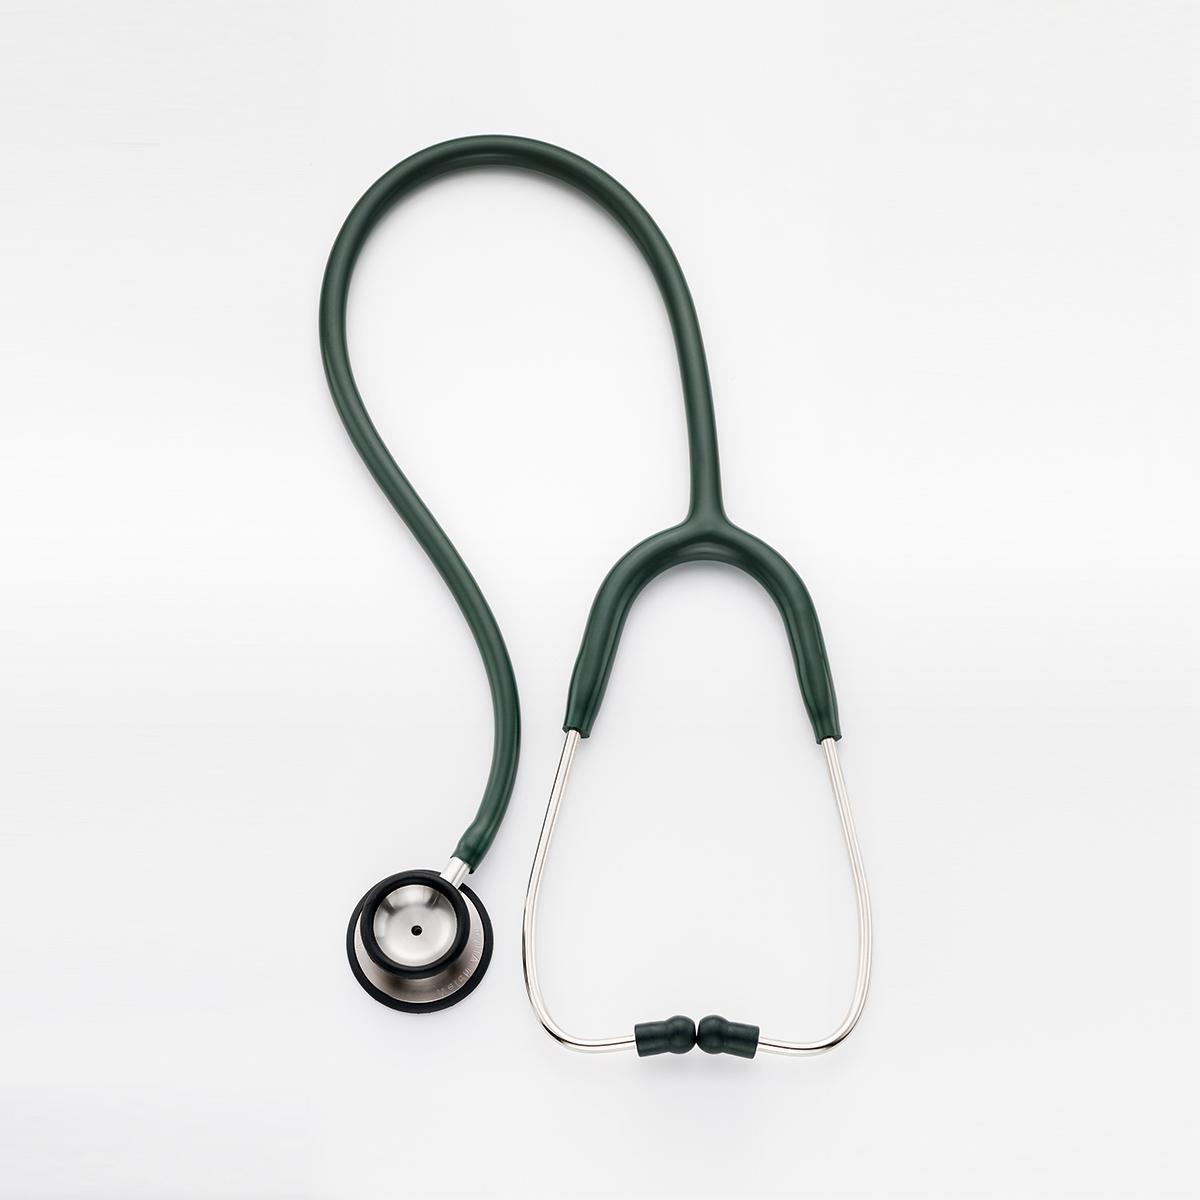 Ett Welch Allyn Professional-stetoskop för veterinärmedicin, i svart